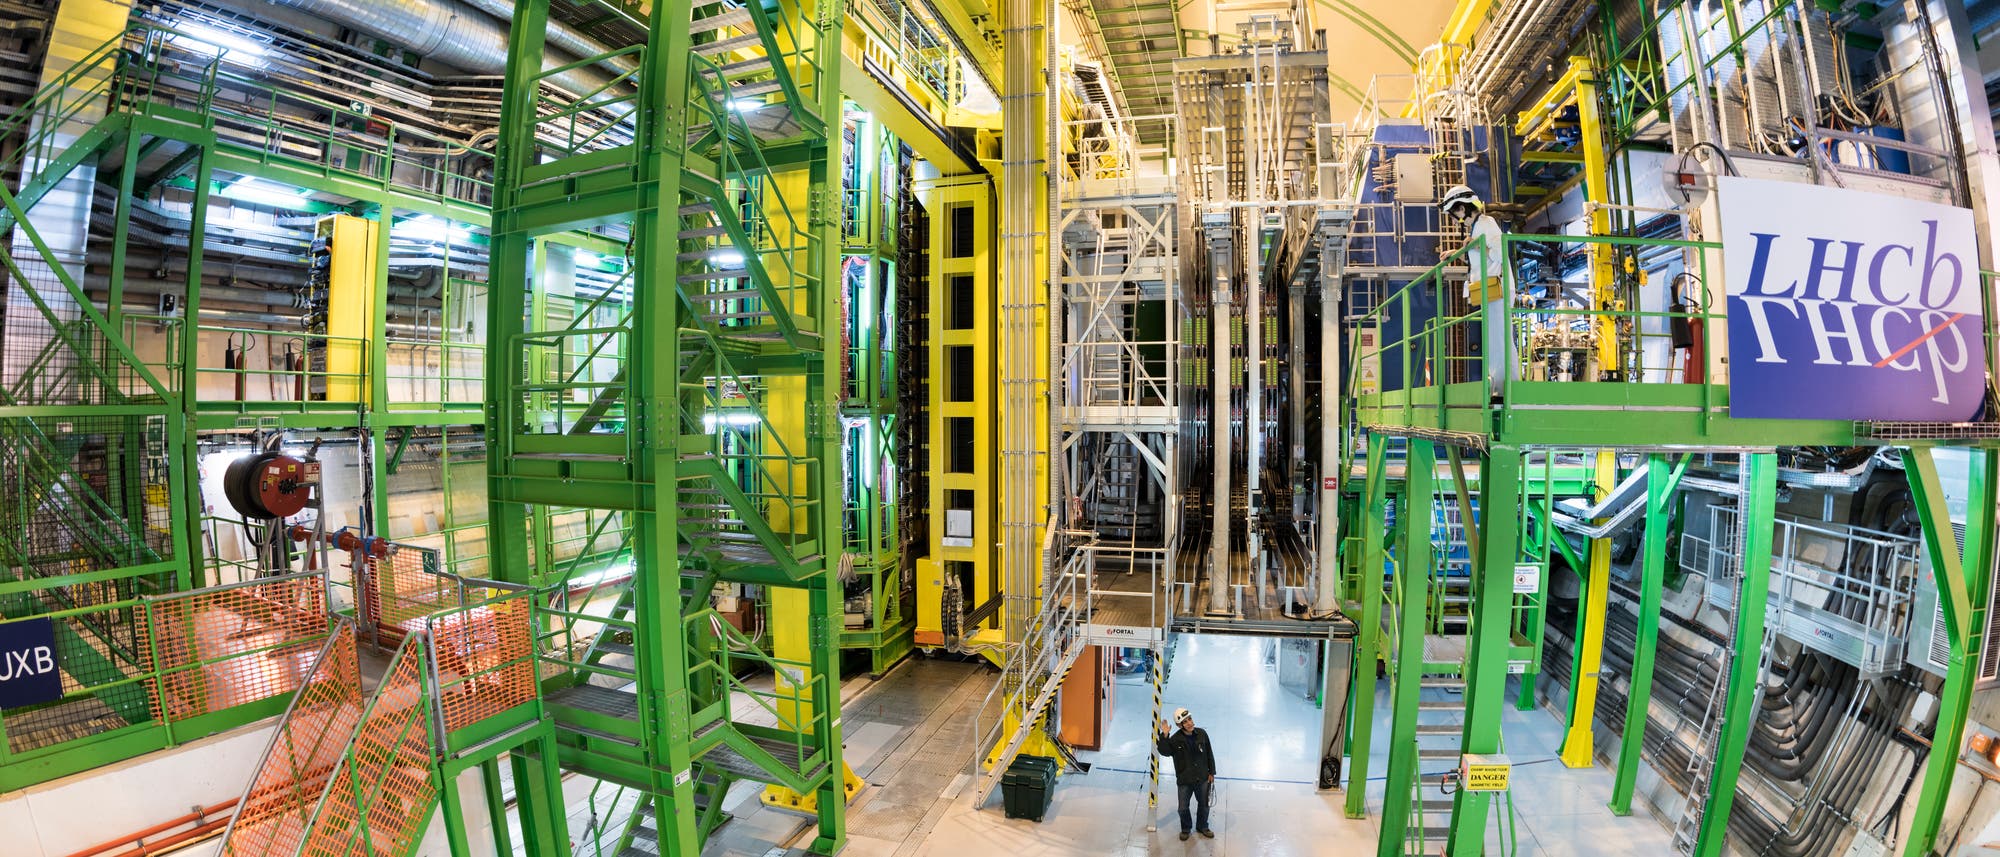 In einer unterirdischen Kaverne am Teilchenlabor CERN befindet sich das LHCb-Experiment, ein etwa 10 Meter hoher und 20 Meter langer Detektorkomplex.